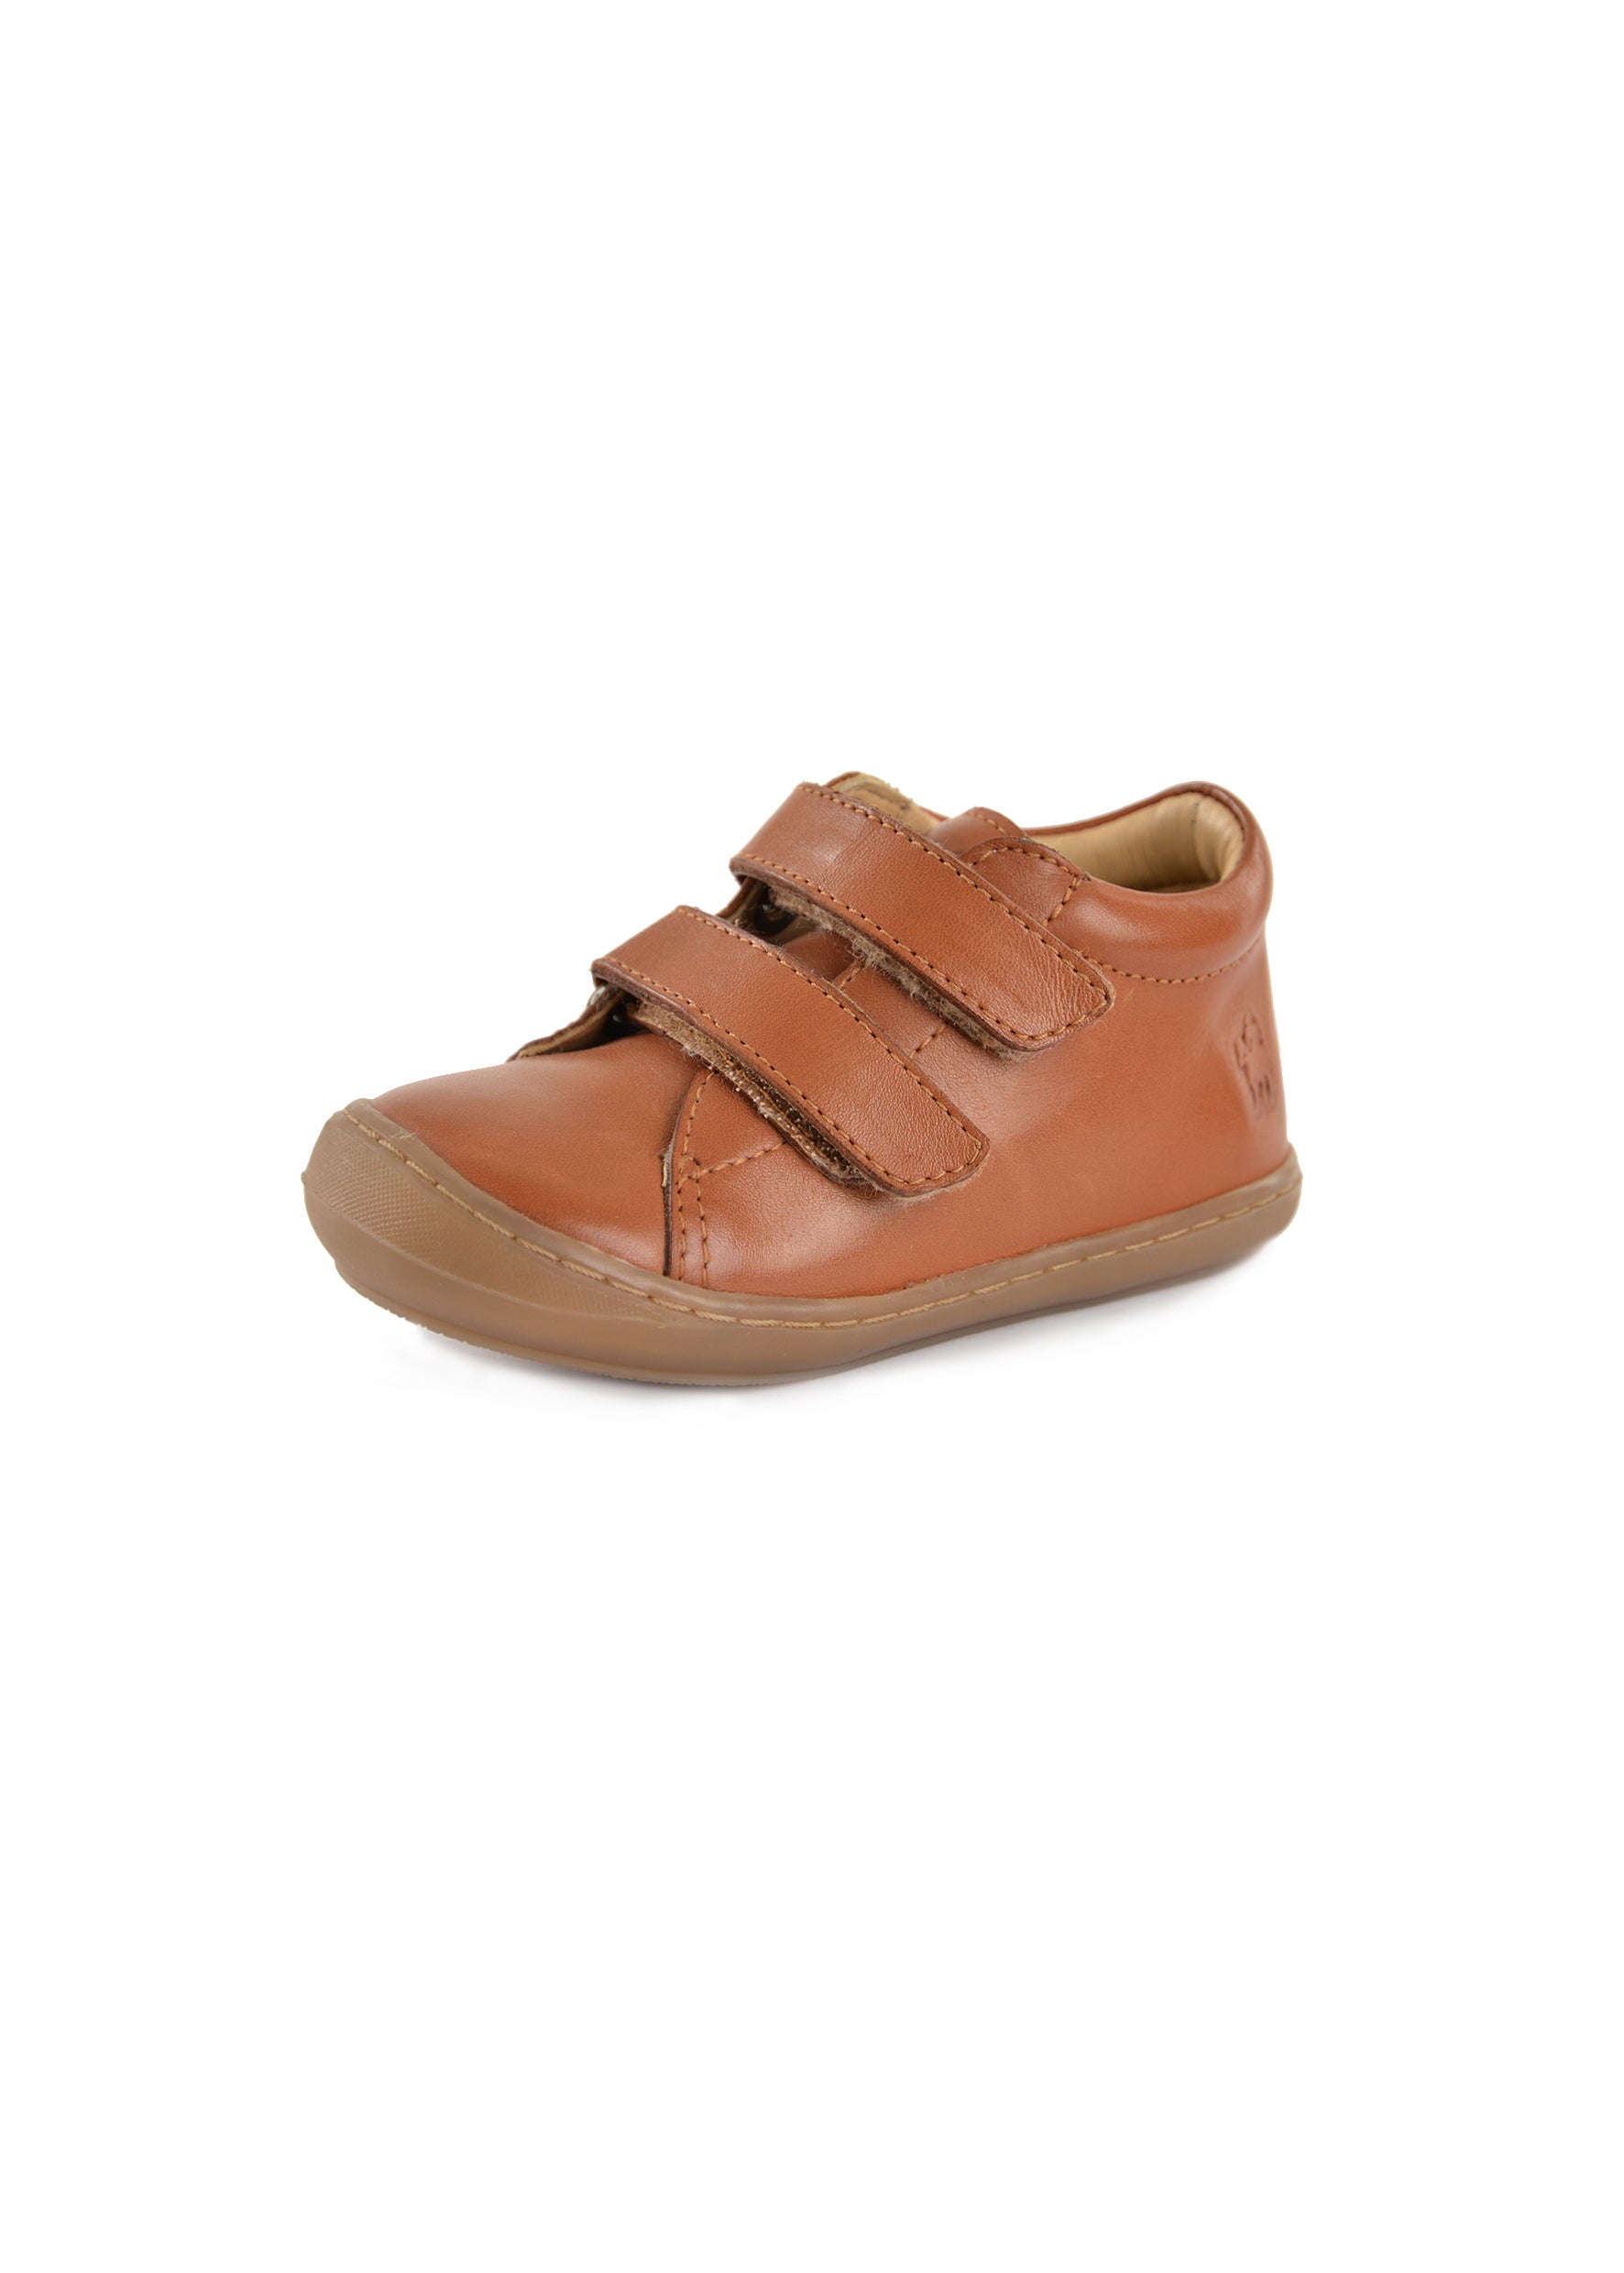 Thomas Cook Infant Nova Velcro Shoe - CLEARANCE